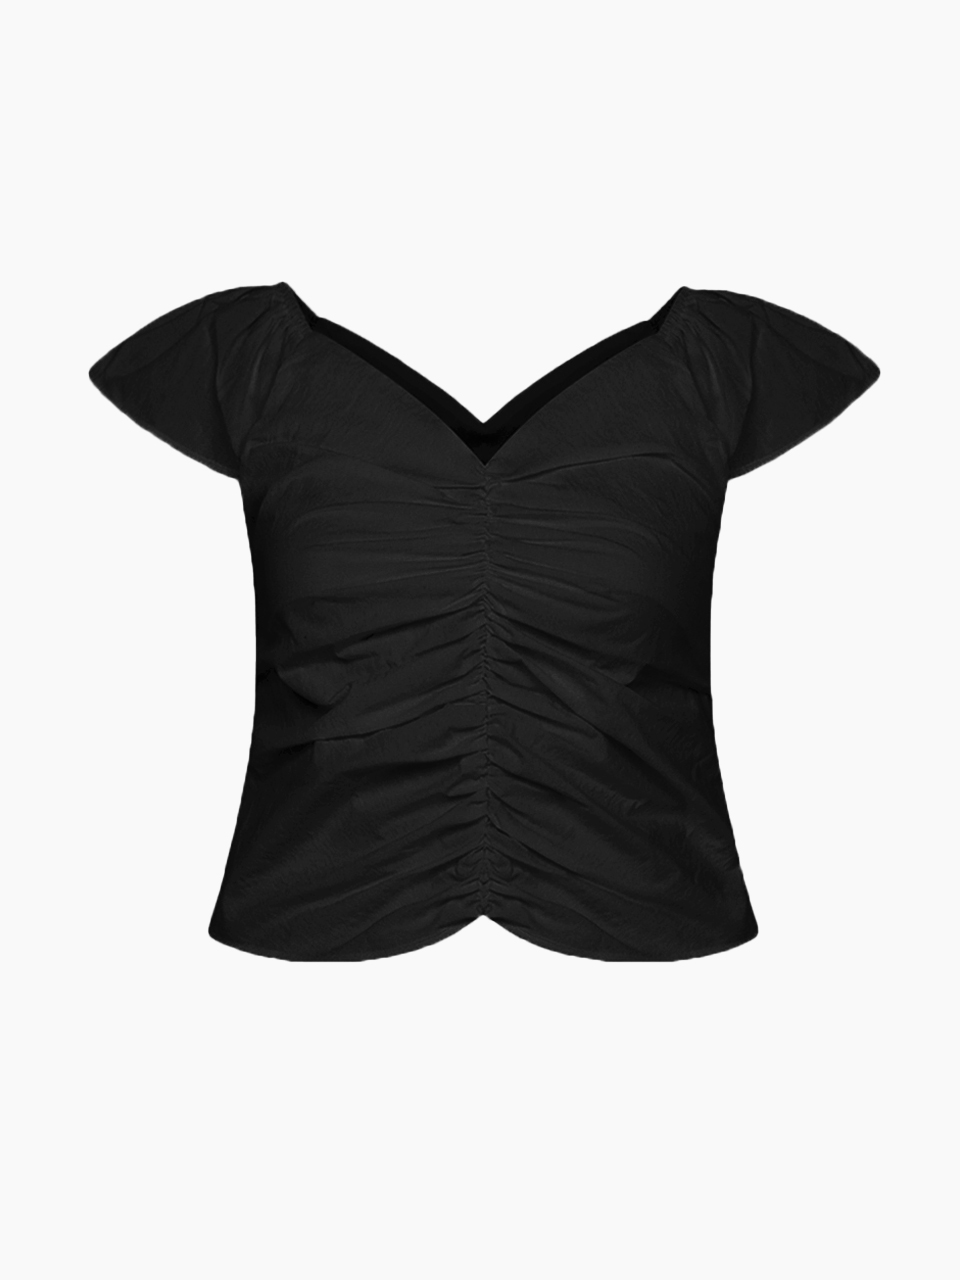 cooing shirring blouse - black